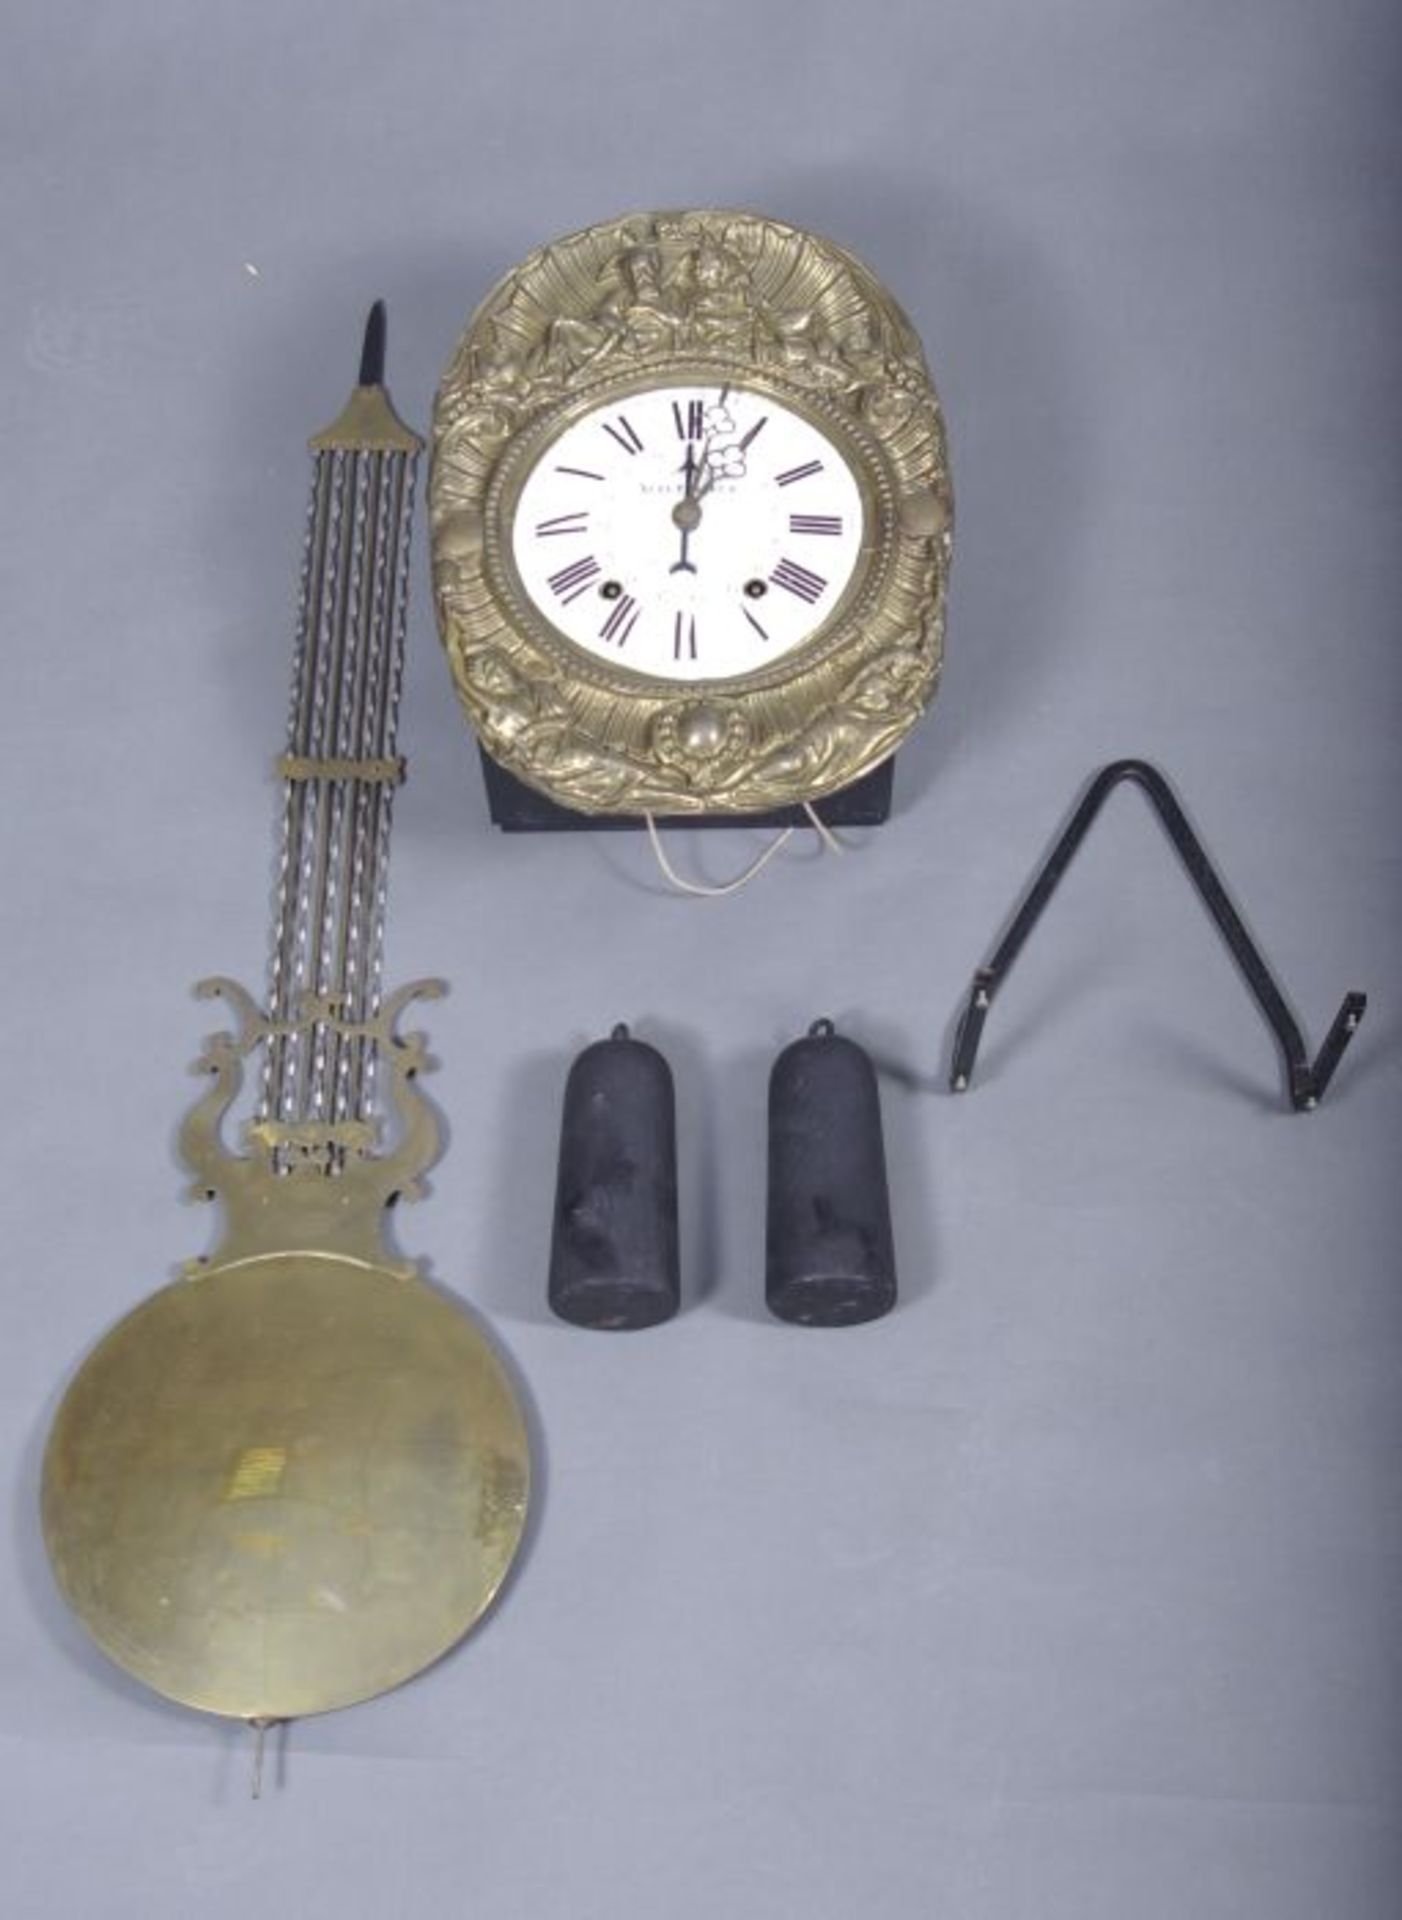 Comtoise-UhrFrankreich, 19.Jh., rechteckiges Uhrengehäuse, ovales Schild m. reliefplastischem - Bild 2 aus 2